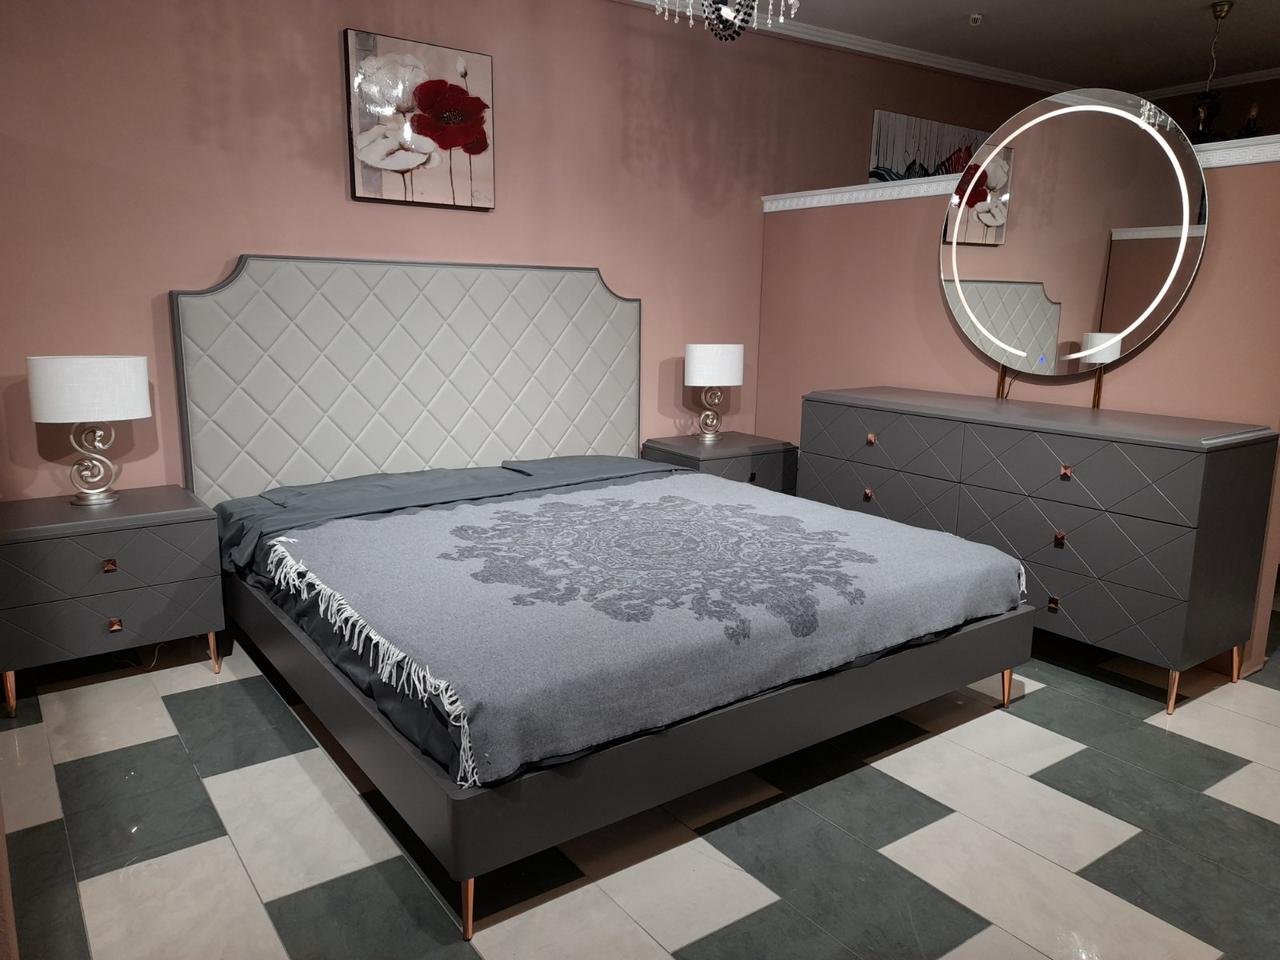 Спальний гарнітур в сучасному стилі TOLEDO Sof (Толедо ), колір сірий темний матовий